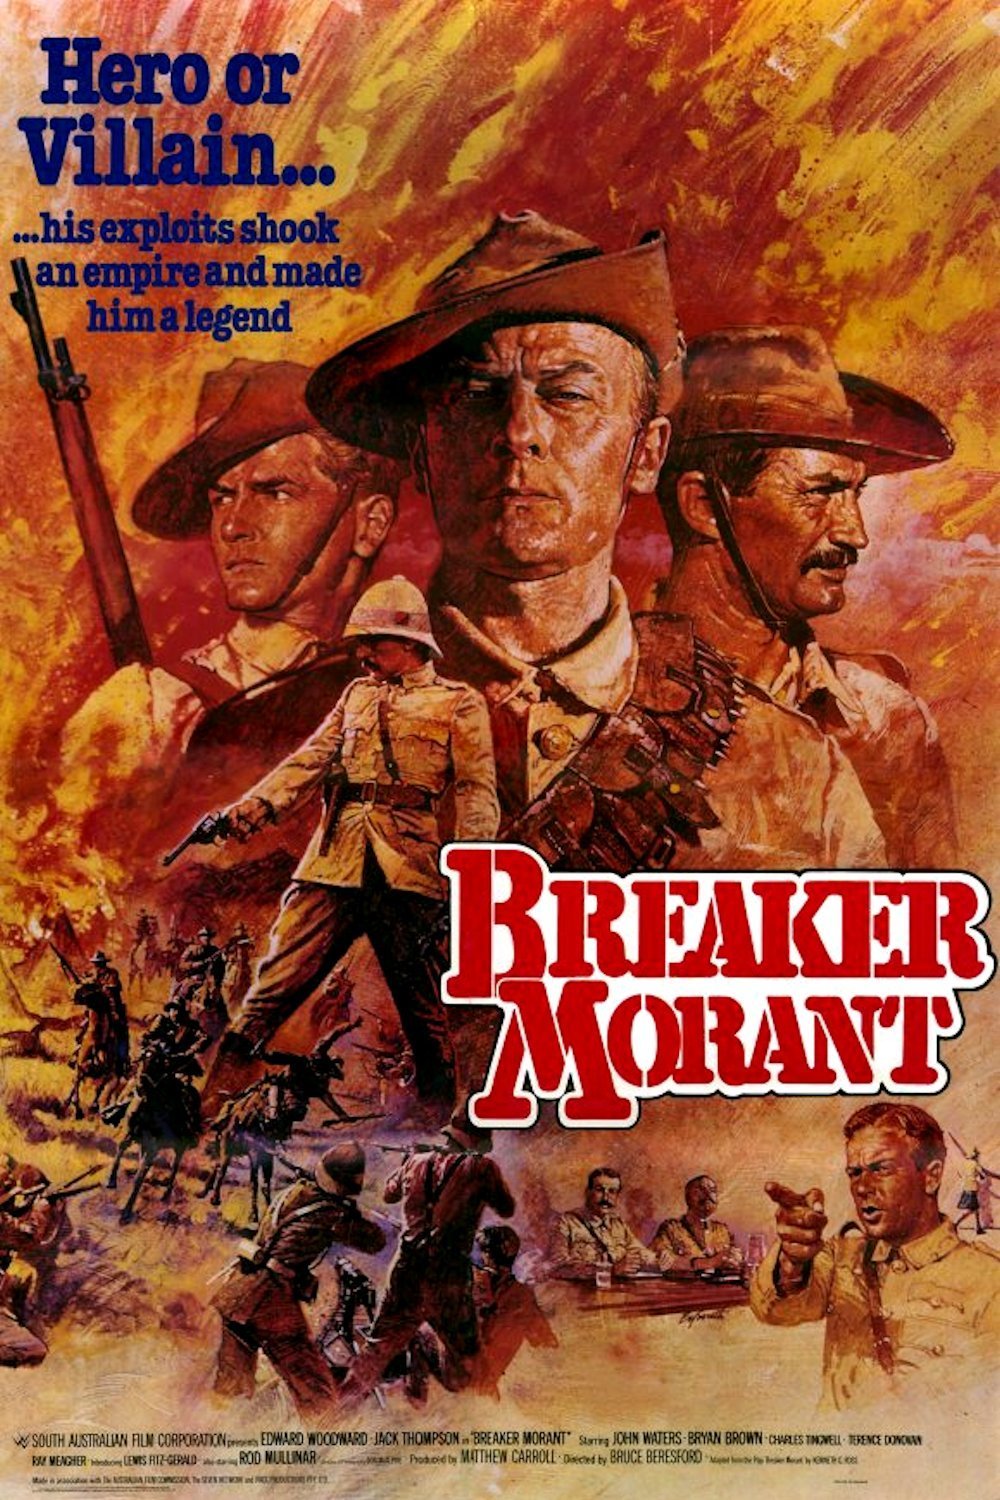 Poster for 'Breaker' Morant